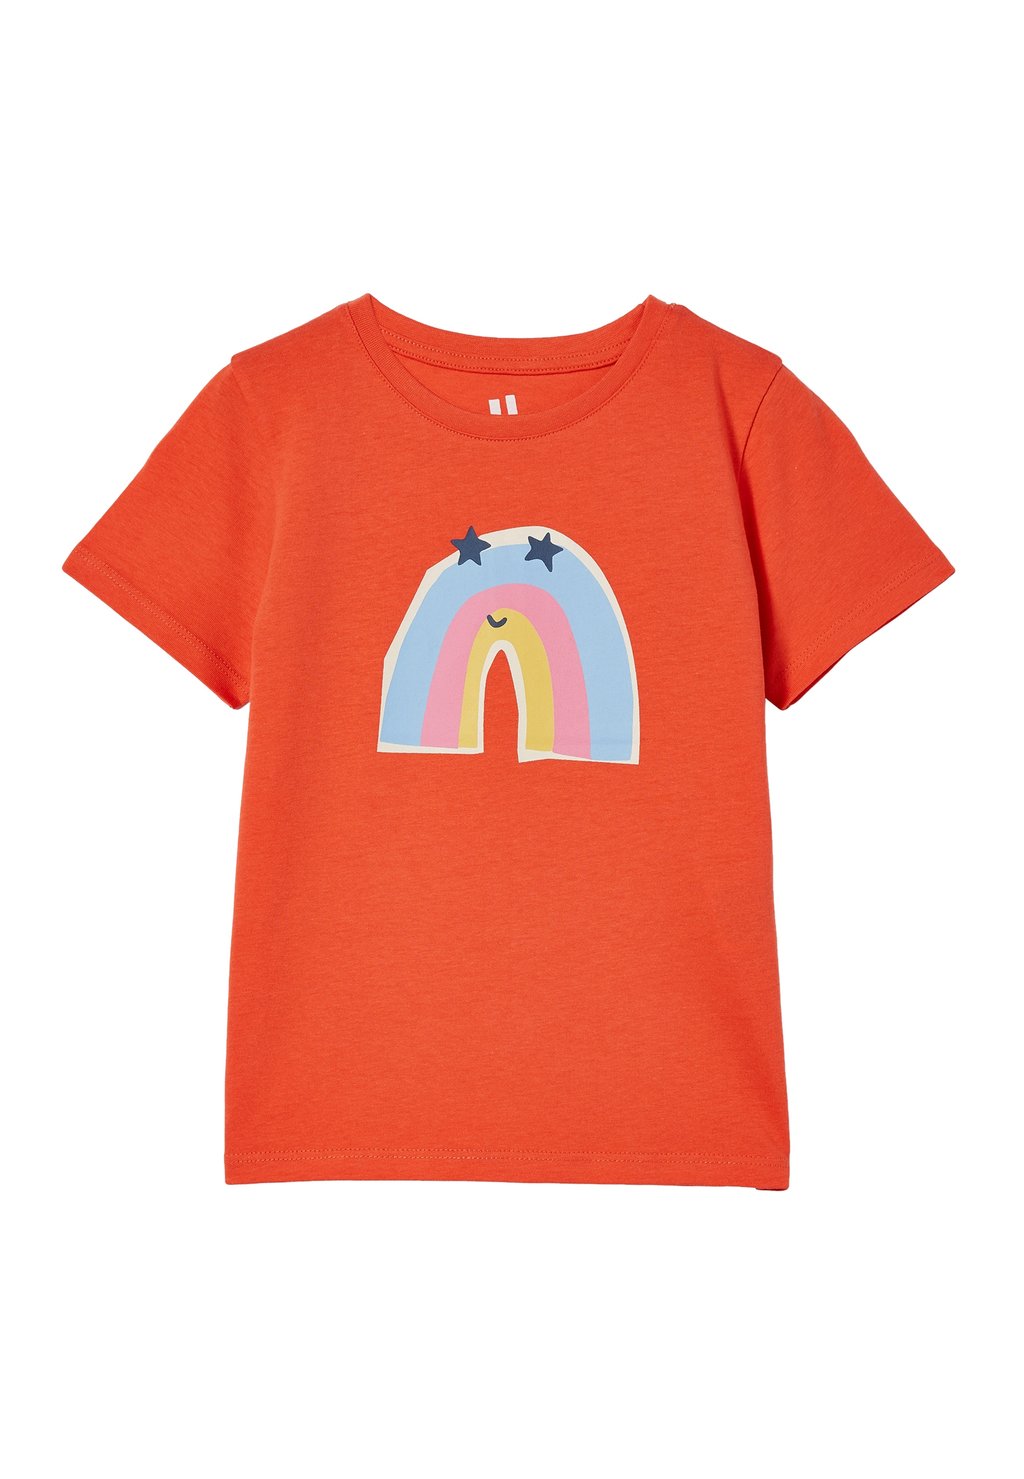 футболка с принтом Penelope Short Sleeve Cotton On, цвет red orange rainbow icon ikranur religious gift cotton prayer mat orange